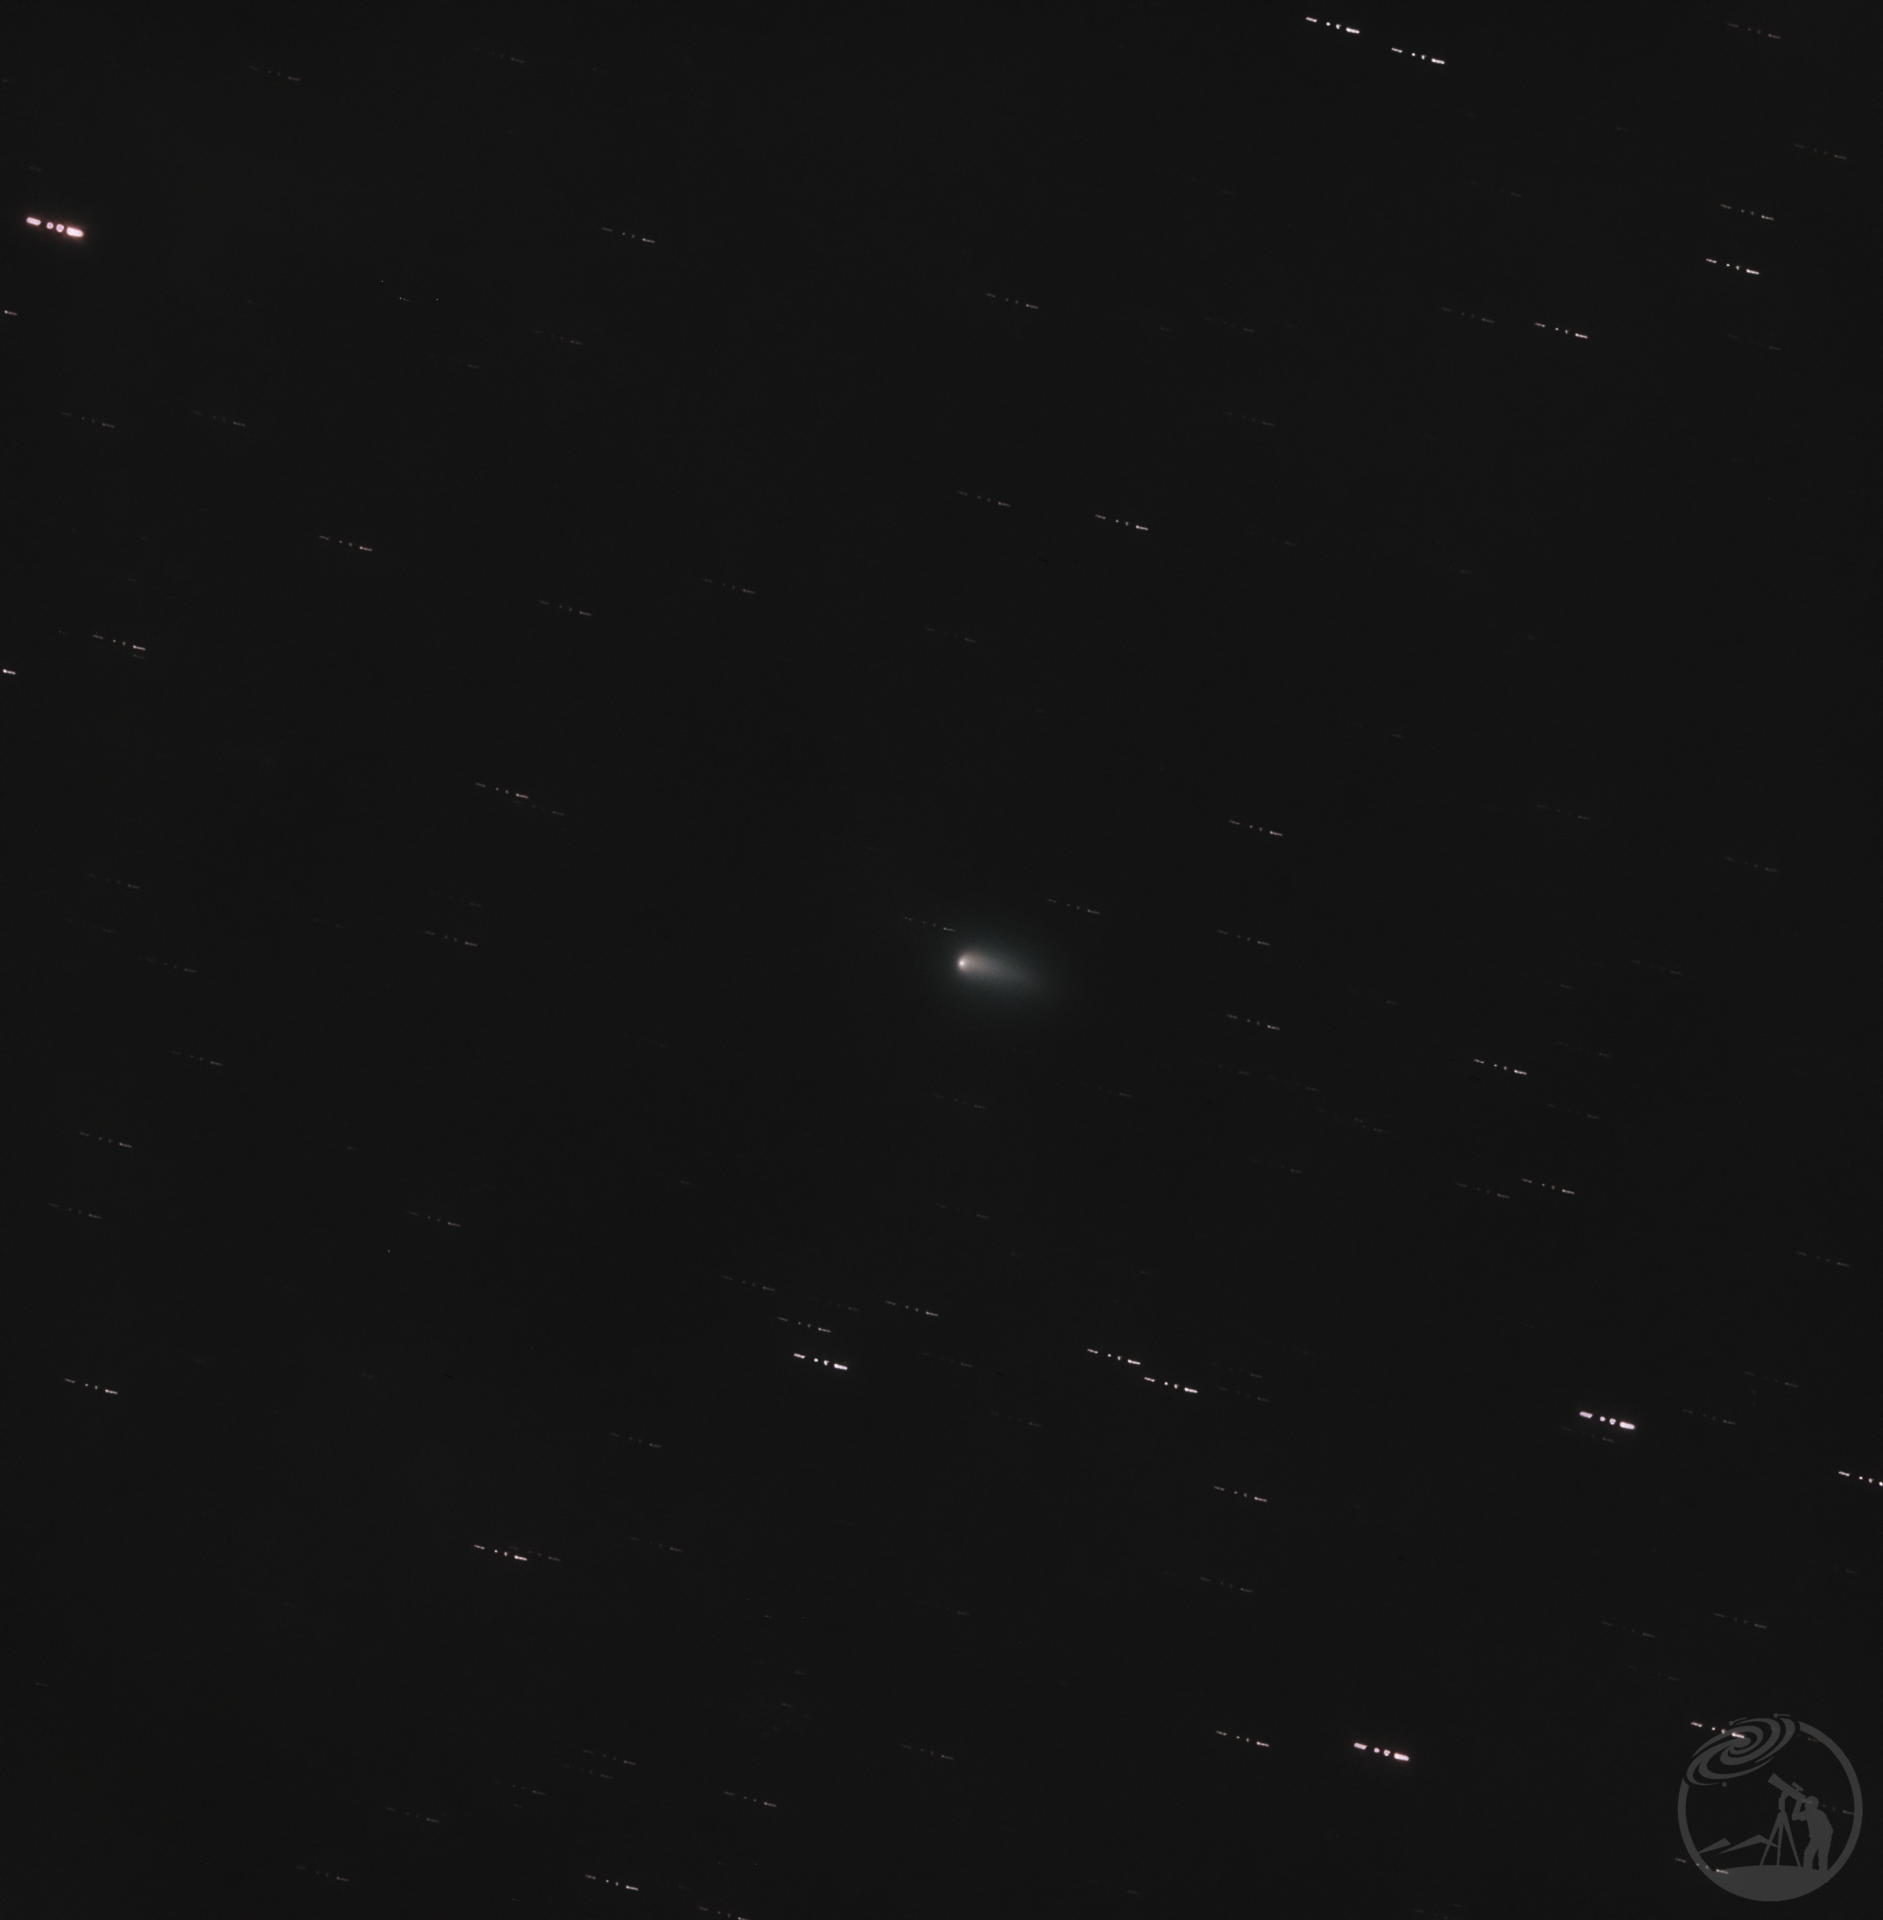 紫金山-阿特拉斯(Tsuchinshan-ATLAS) 彗星